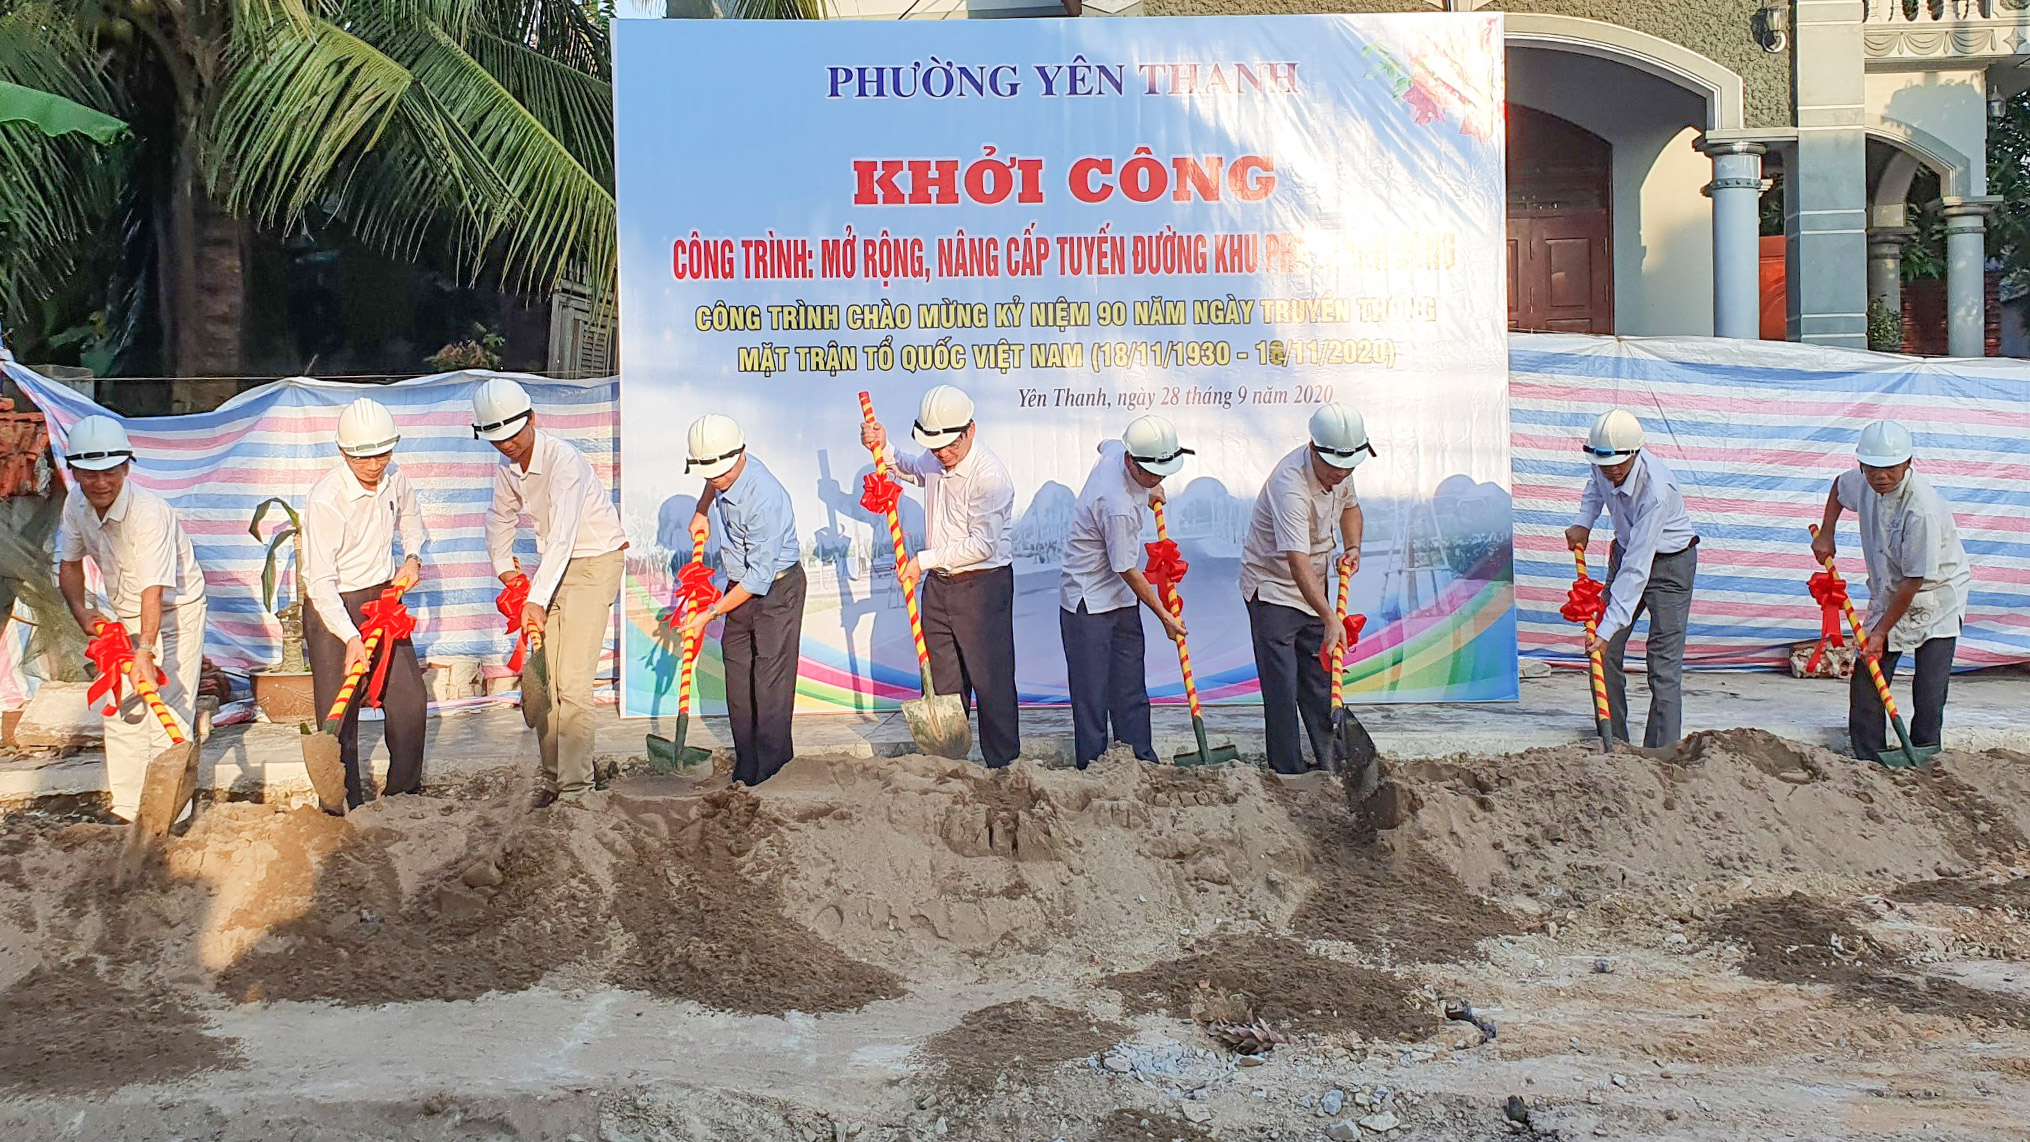 Lãnh đạo Ủy ban MTTQ tỉnh và TP Uông Bí tham dự lễ khởi công tuyến đường khu phố Phú Thanh Đông, phường Yên Thanh (TP Uông Bí), tháng 9/2020.